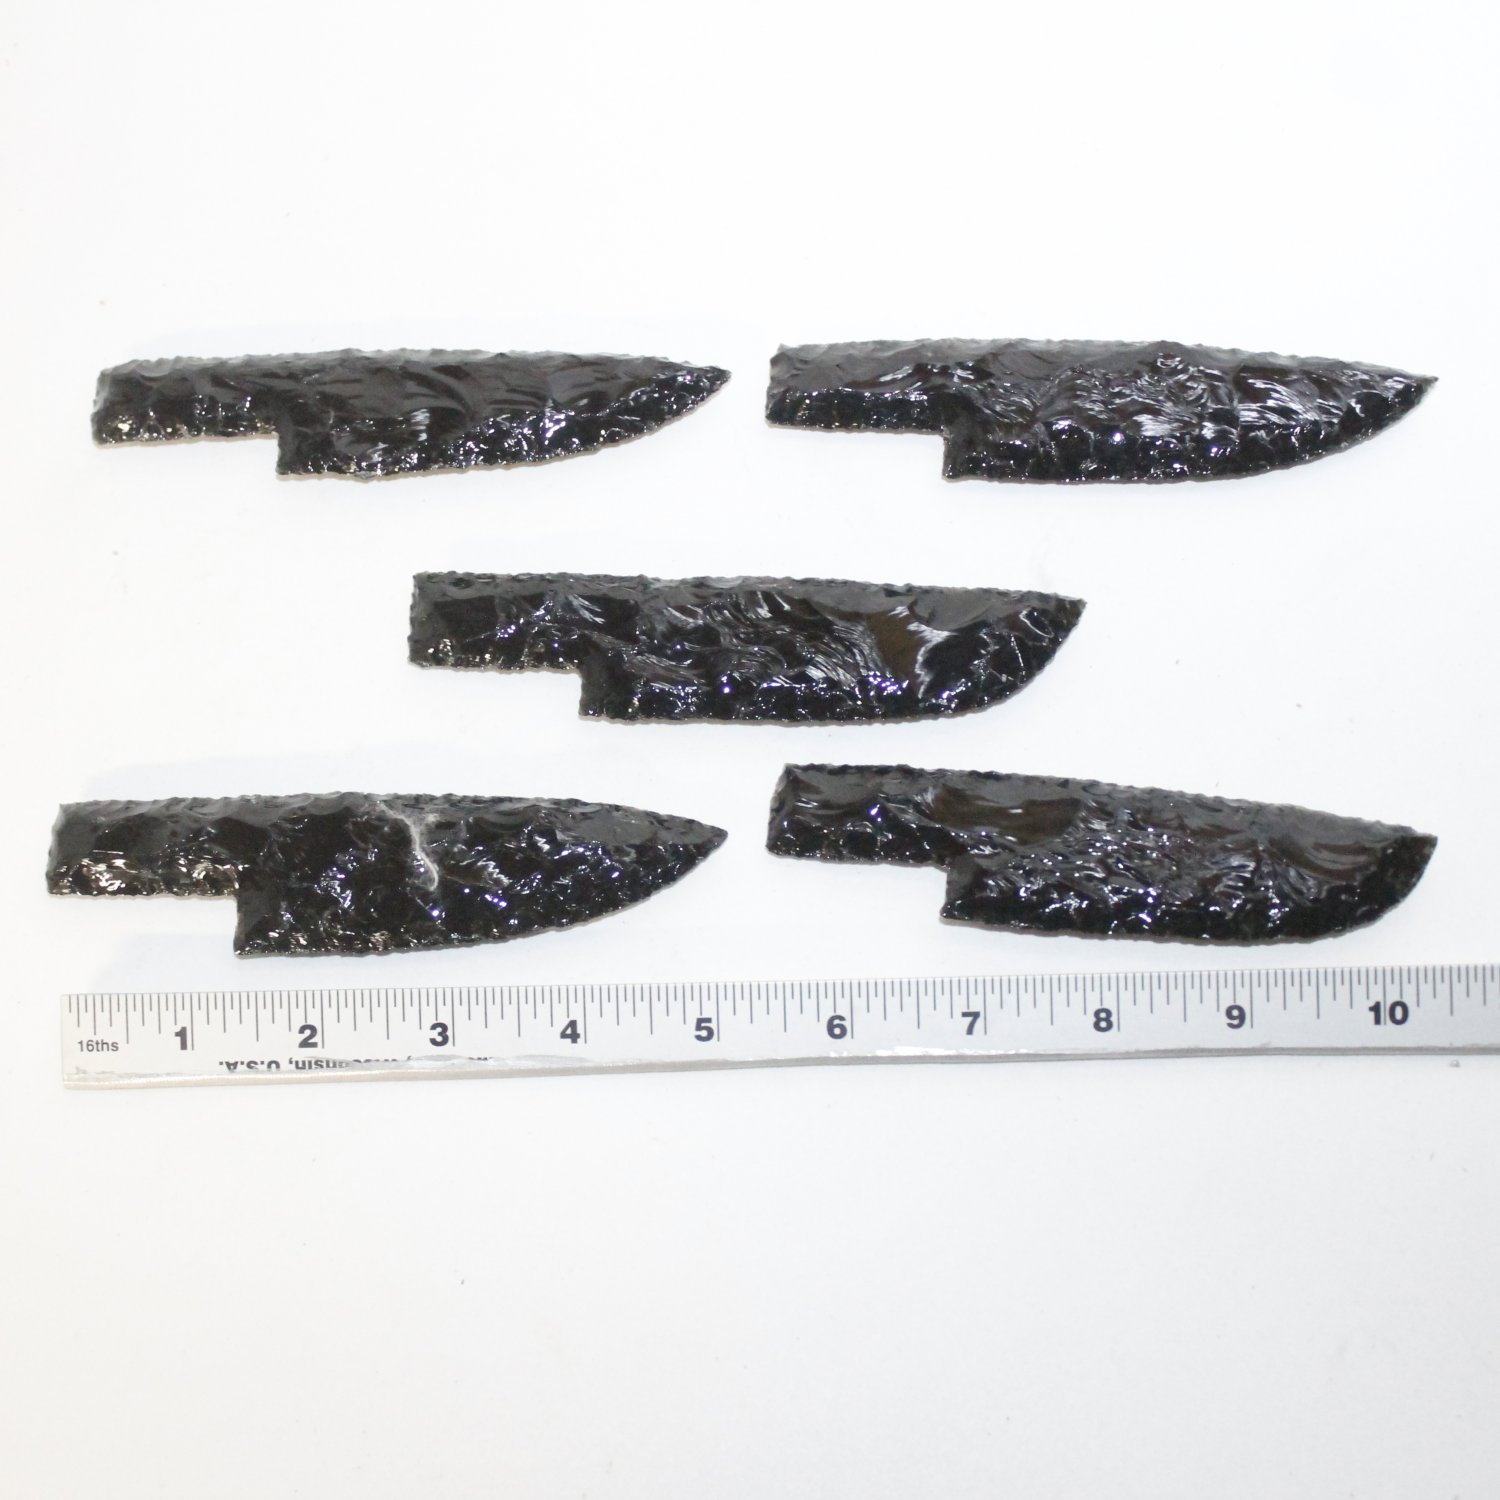 best obsidian knife